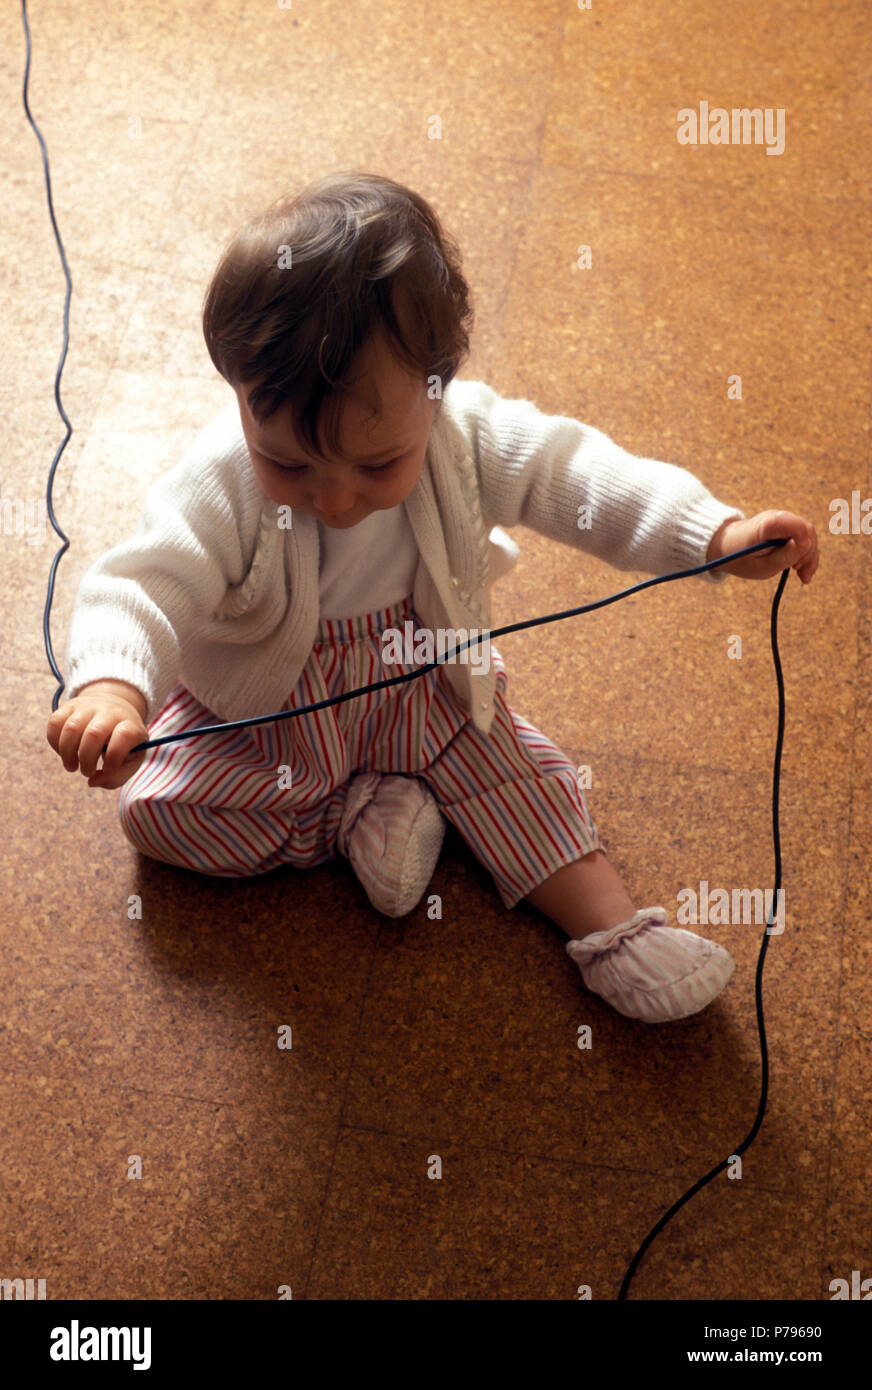 Bebé sentado en el suelo jugando con el cable eléctrico en peligro de electrocución Foto de stock